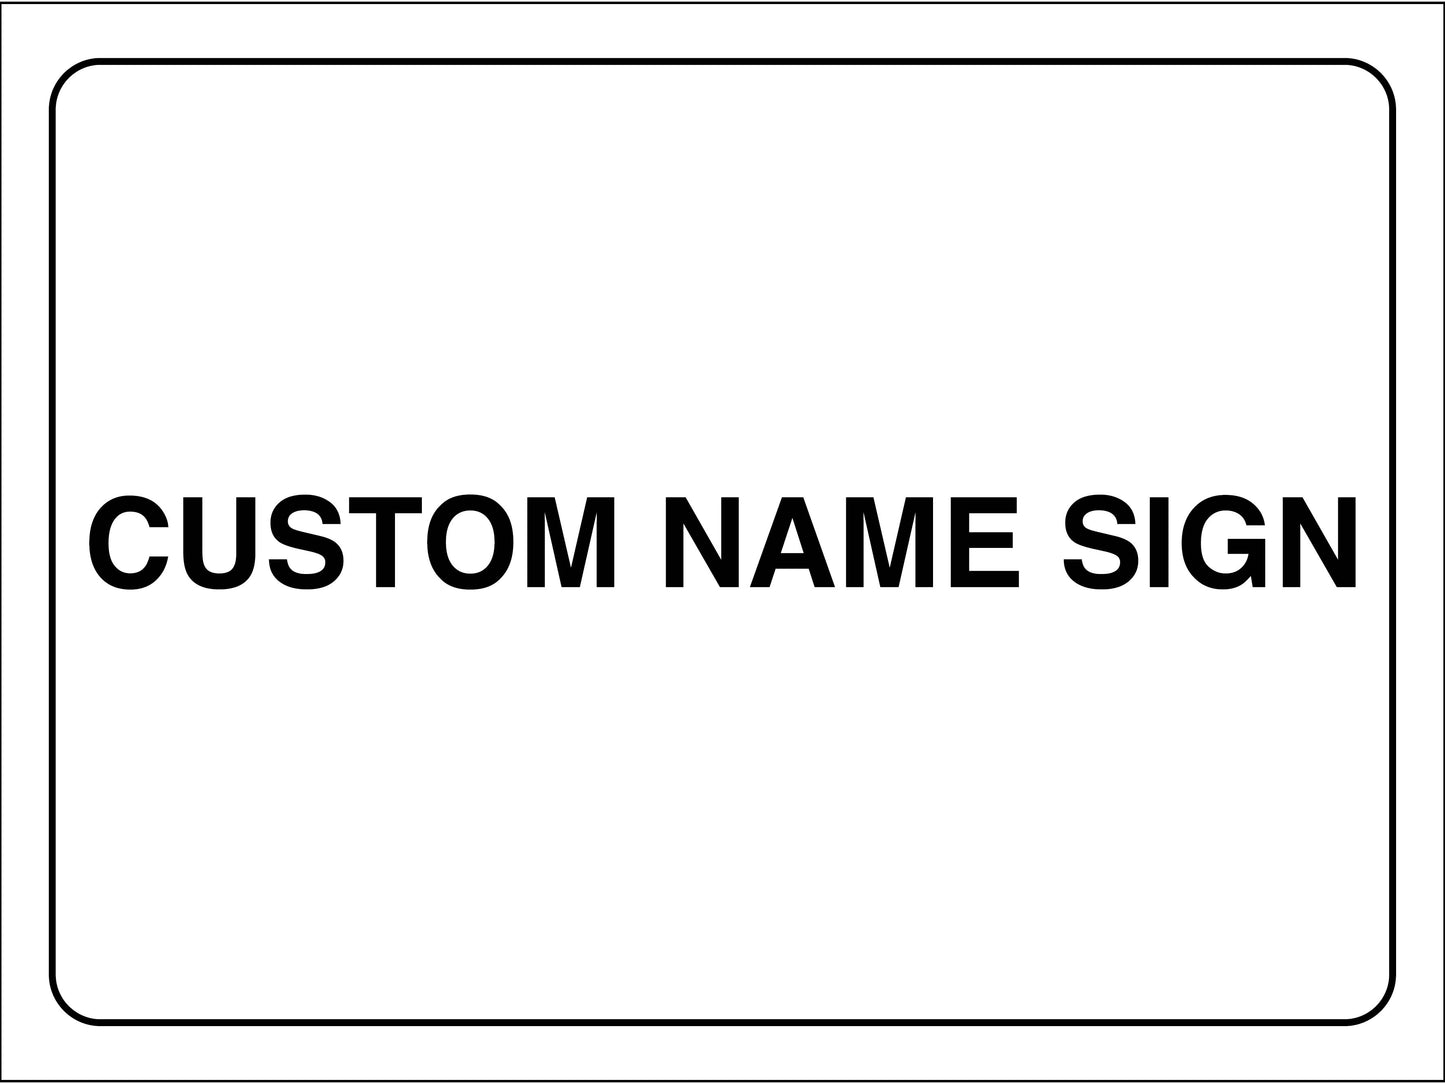 Custom Name Sign